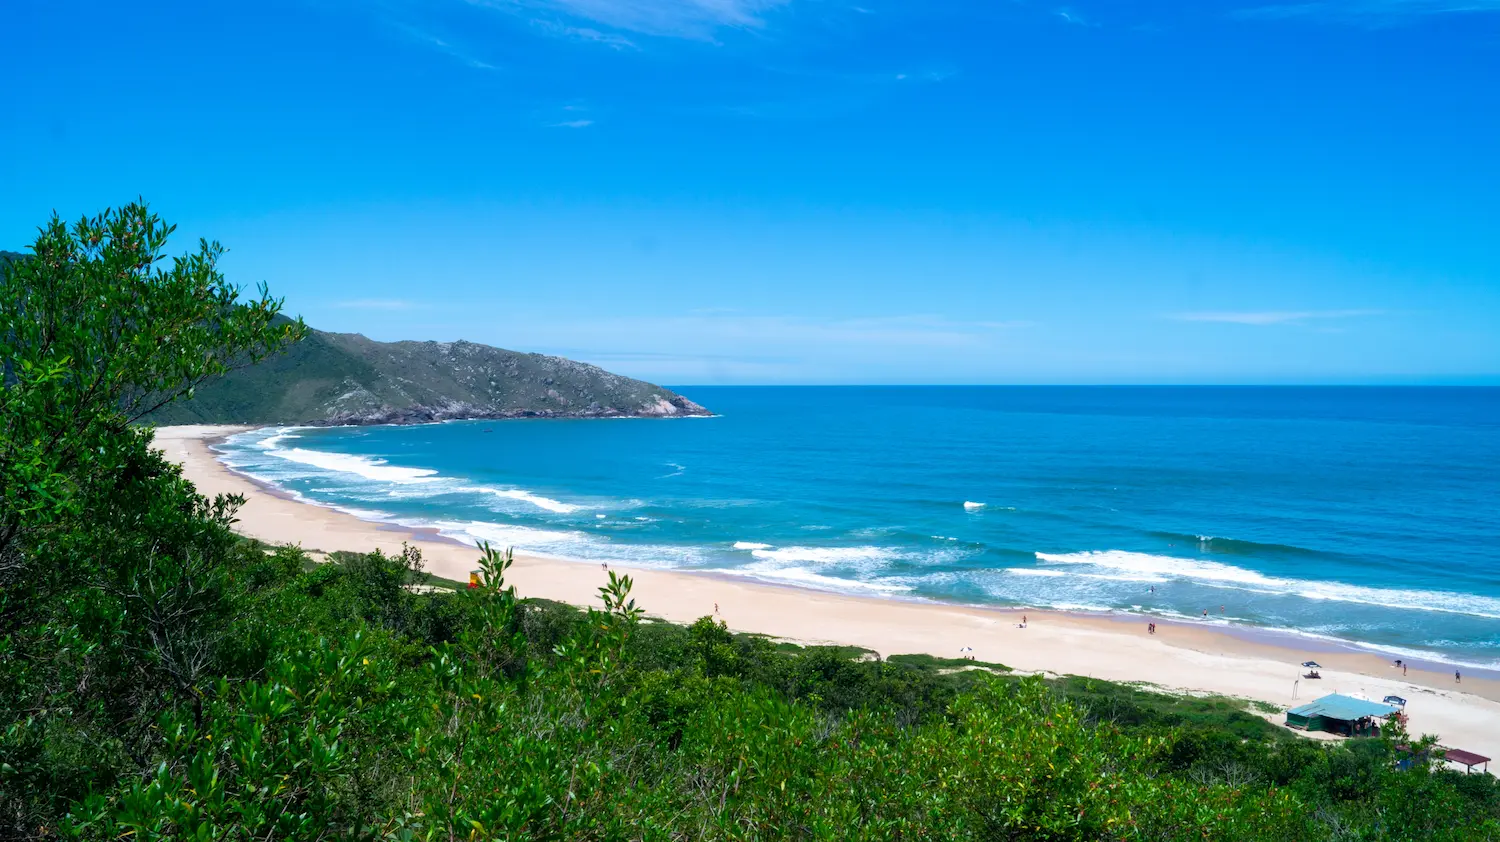 Rota turística: o que fazer no sul da ilha de Florianópolis?